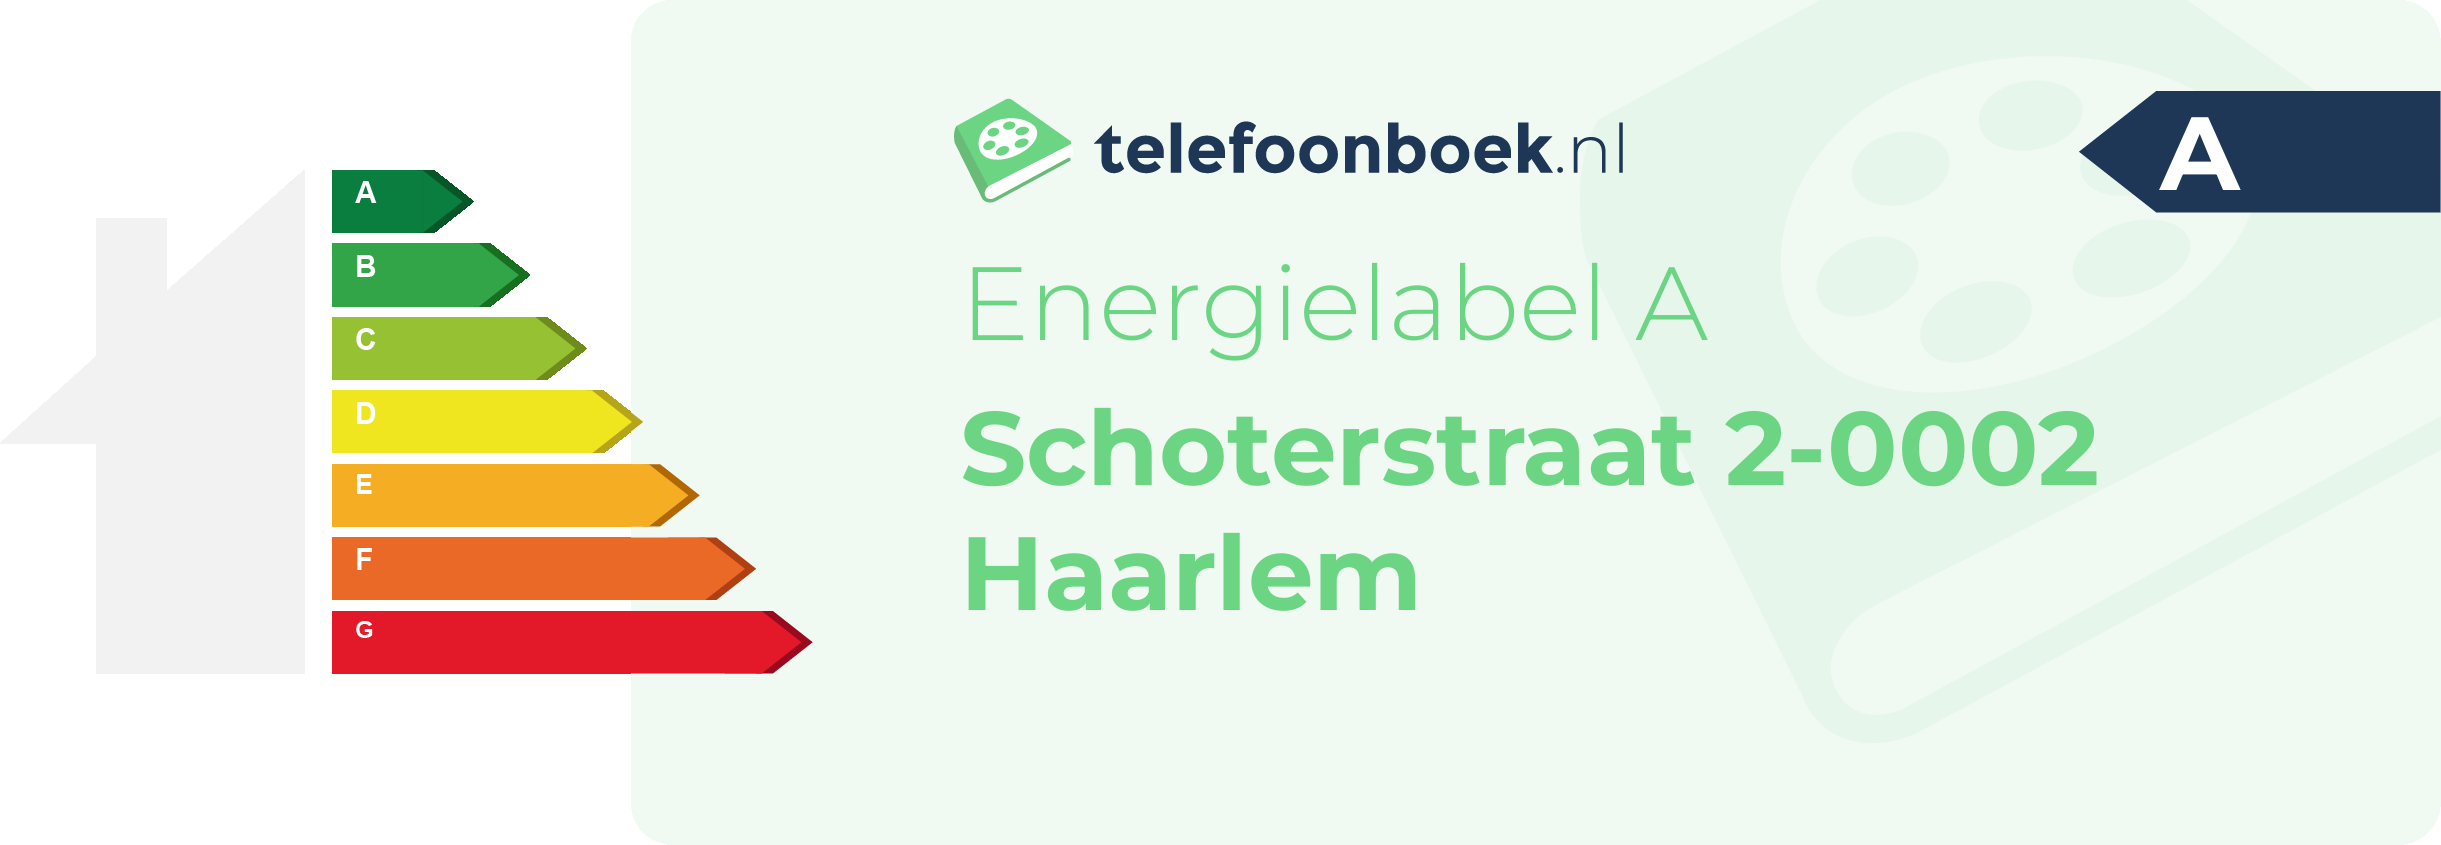 Energielabel Schoterstraat 2-0002 Haarlem